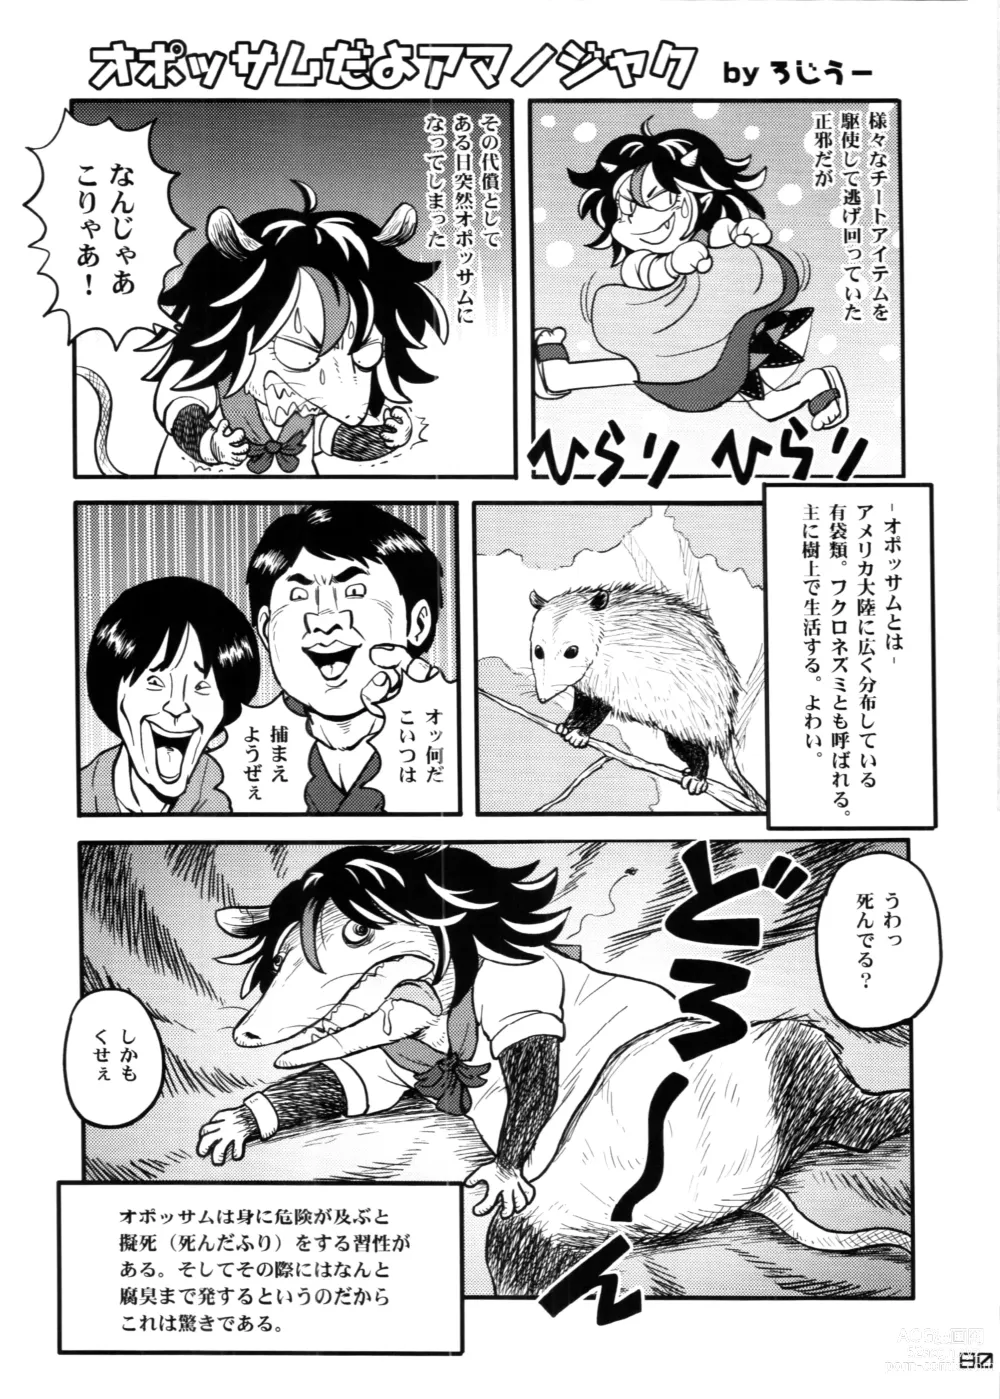 Page 80 of doujinshi Touhou PLUMFUR 4